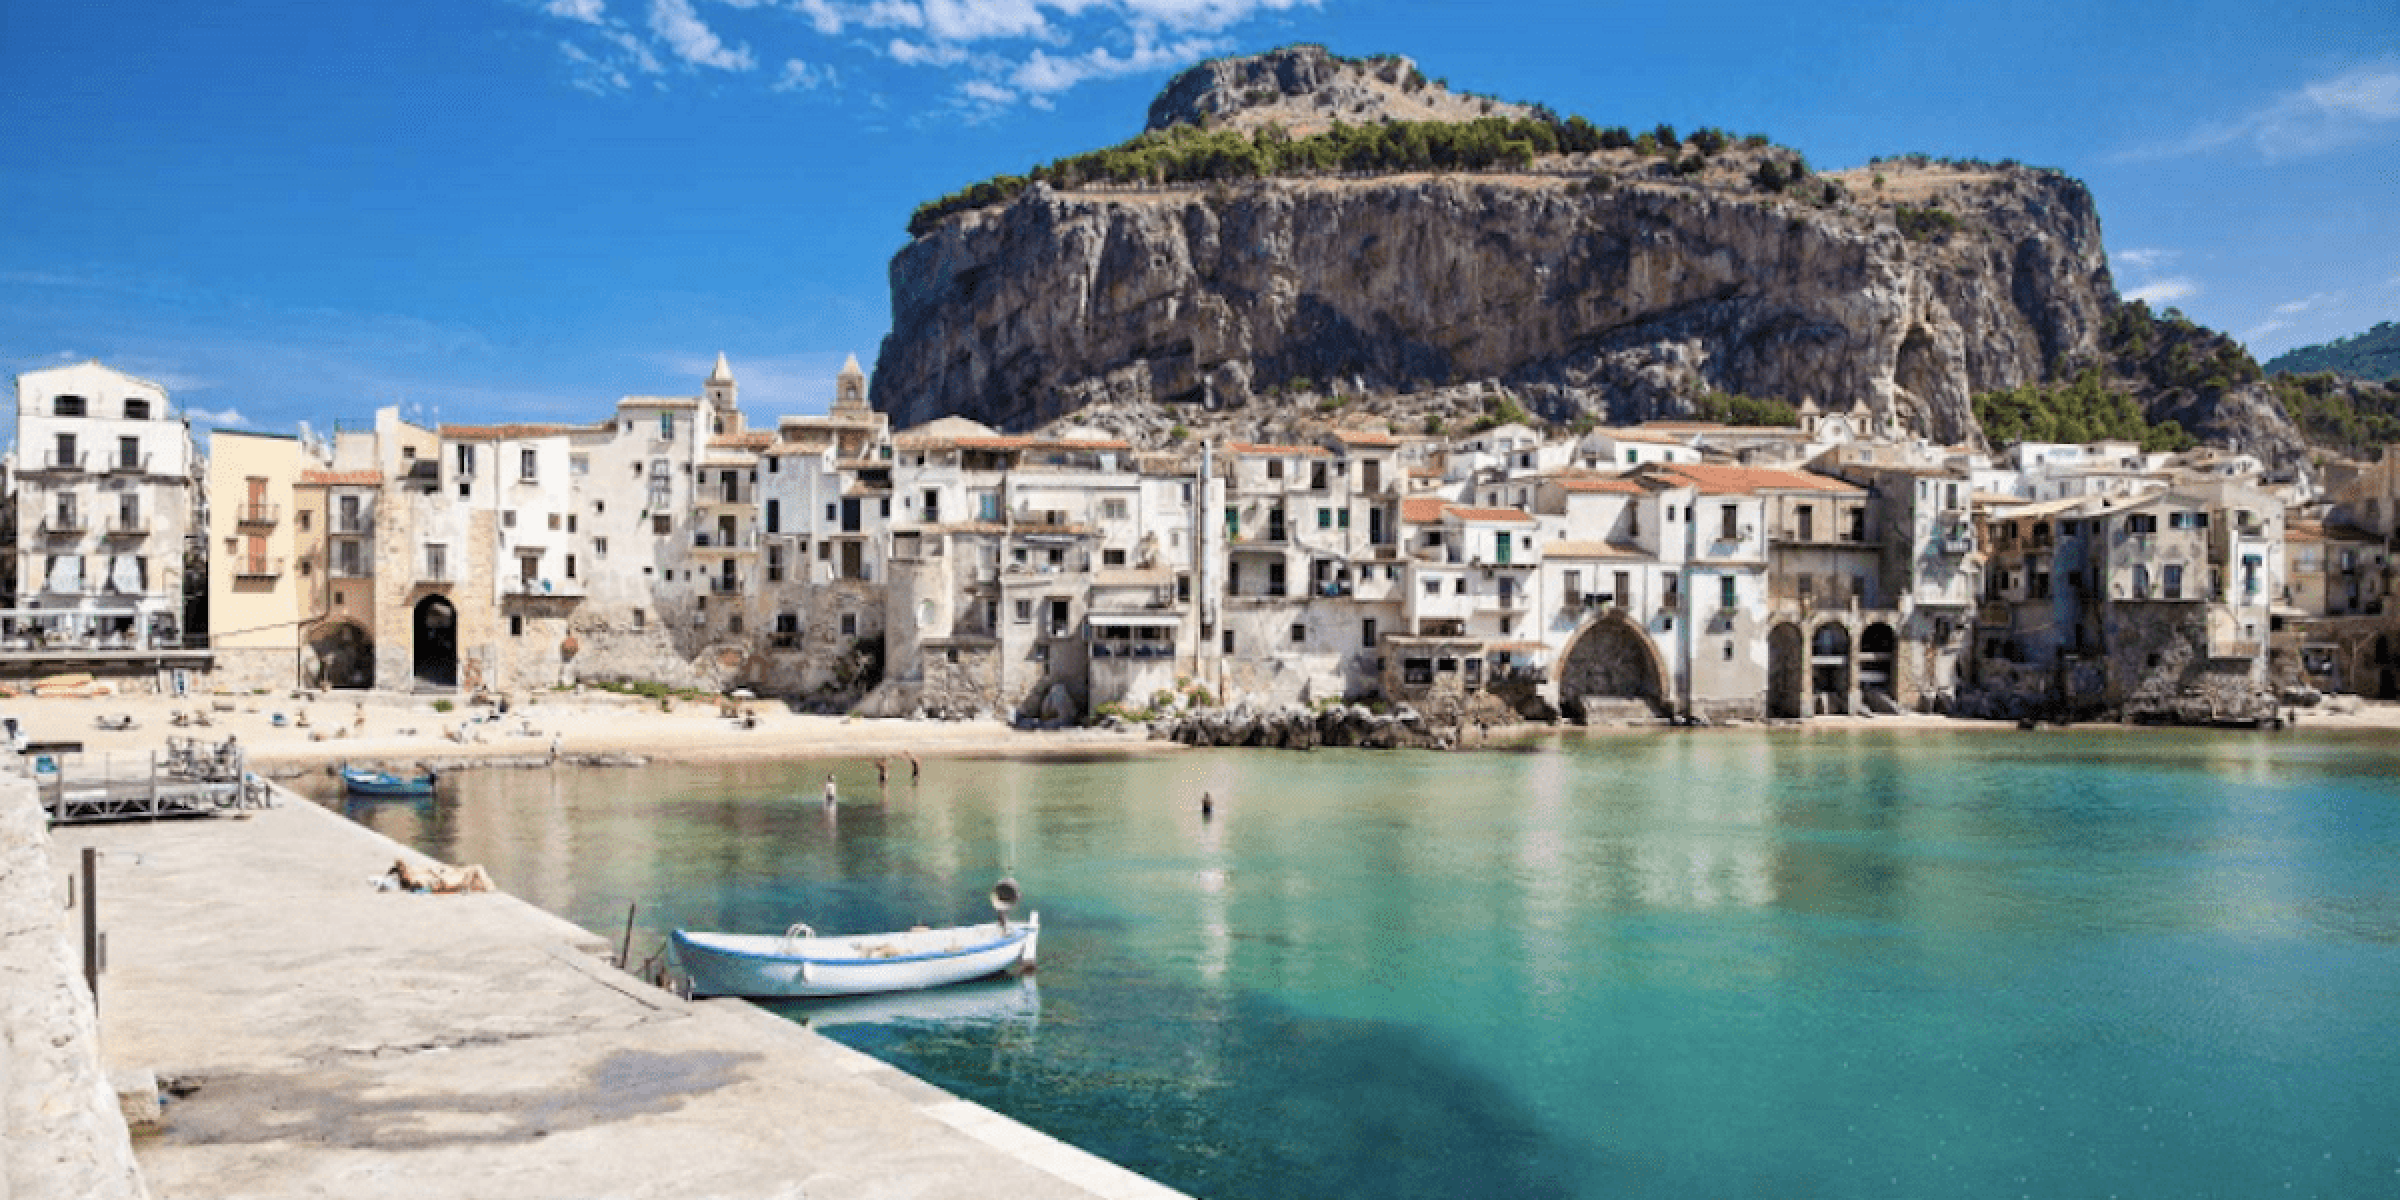 srg-aangepaste-vakanties-sicilië